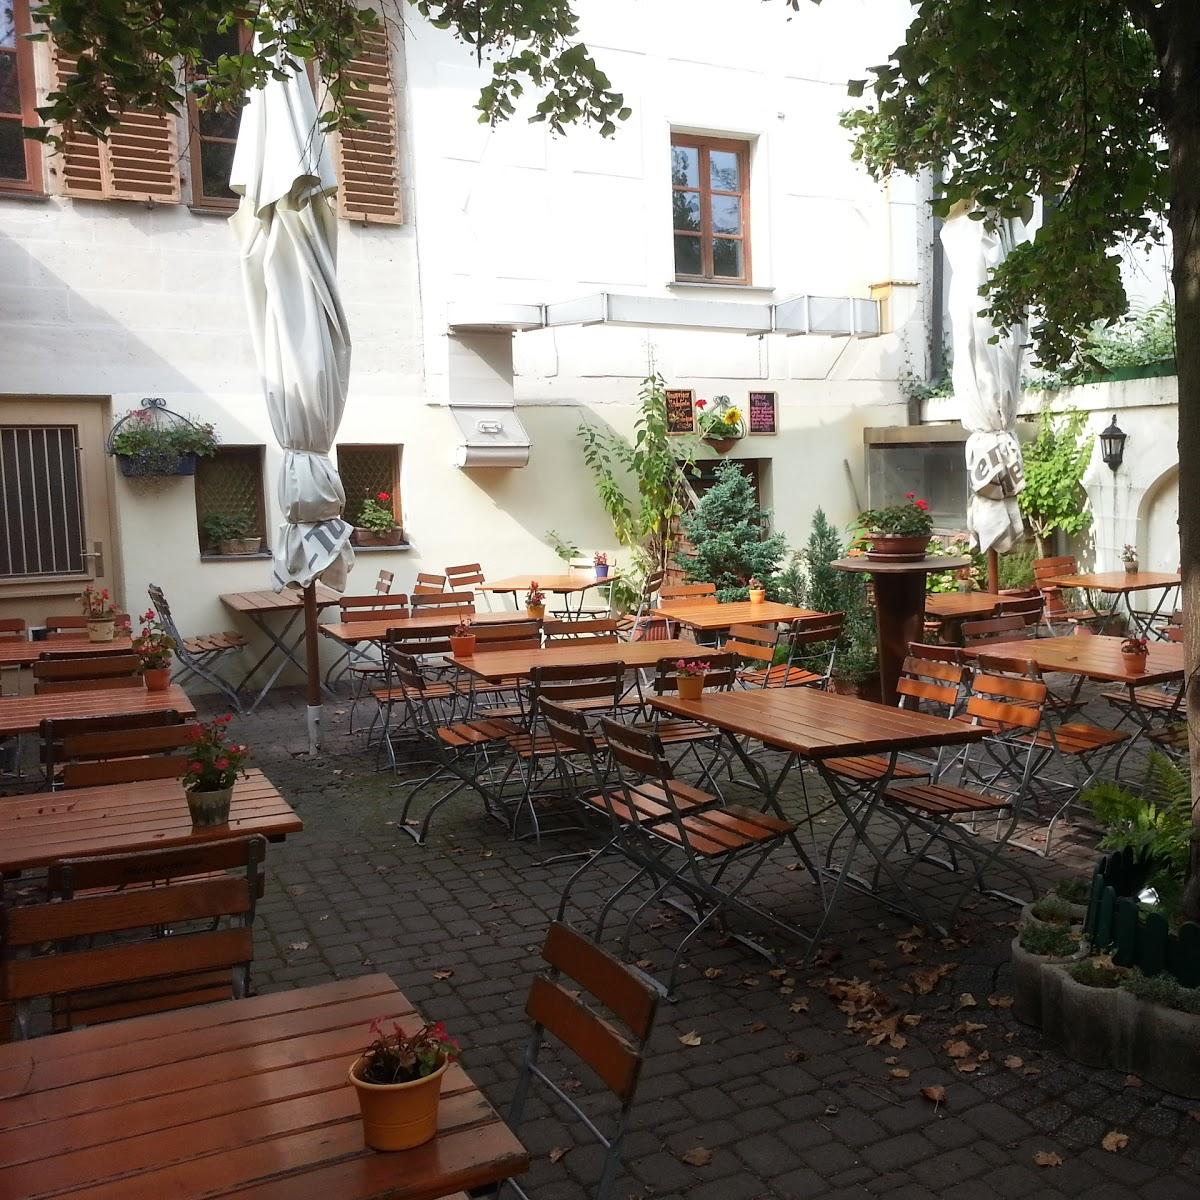 Restaurant "Gasthaus Milan" in  Erlangen